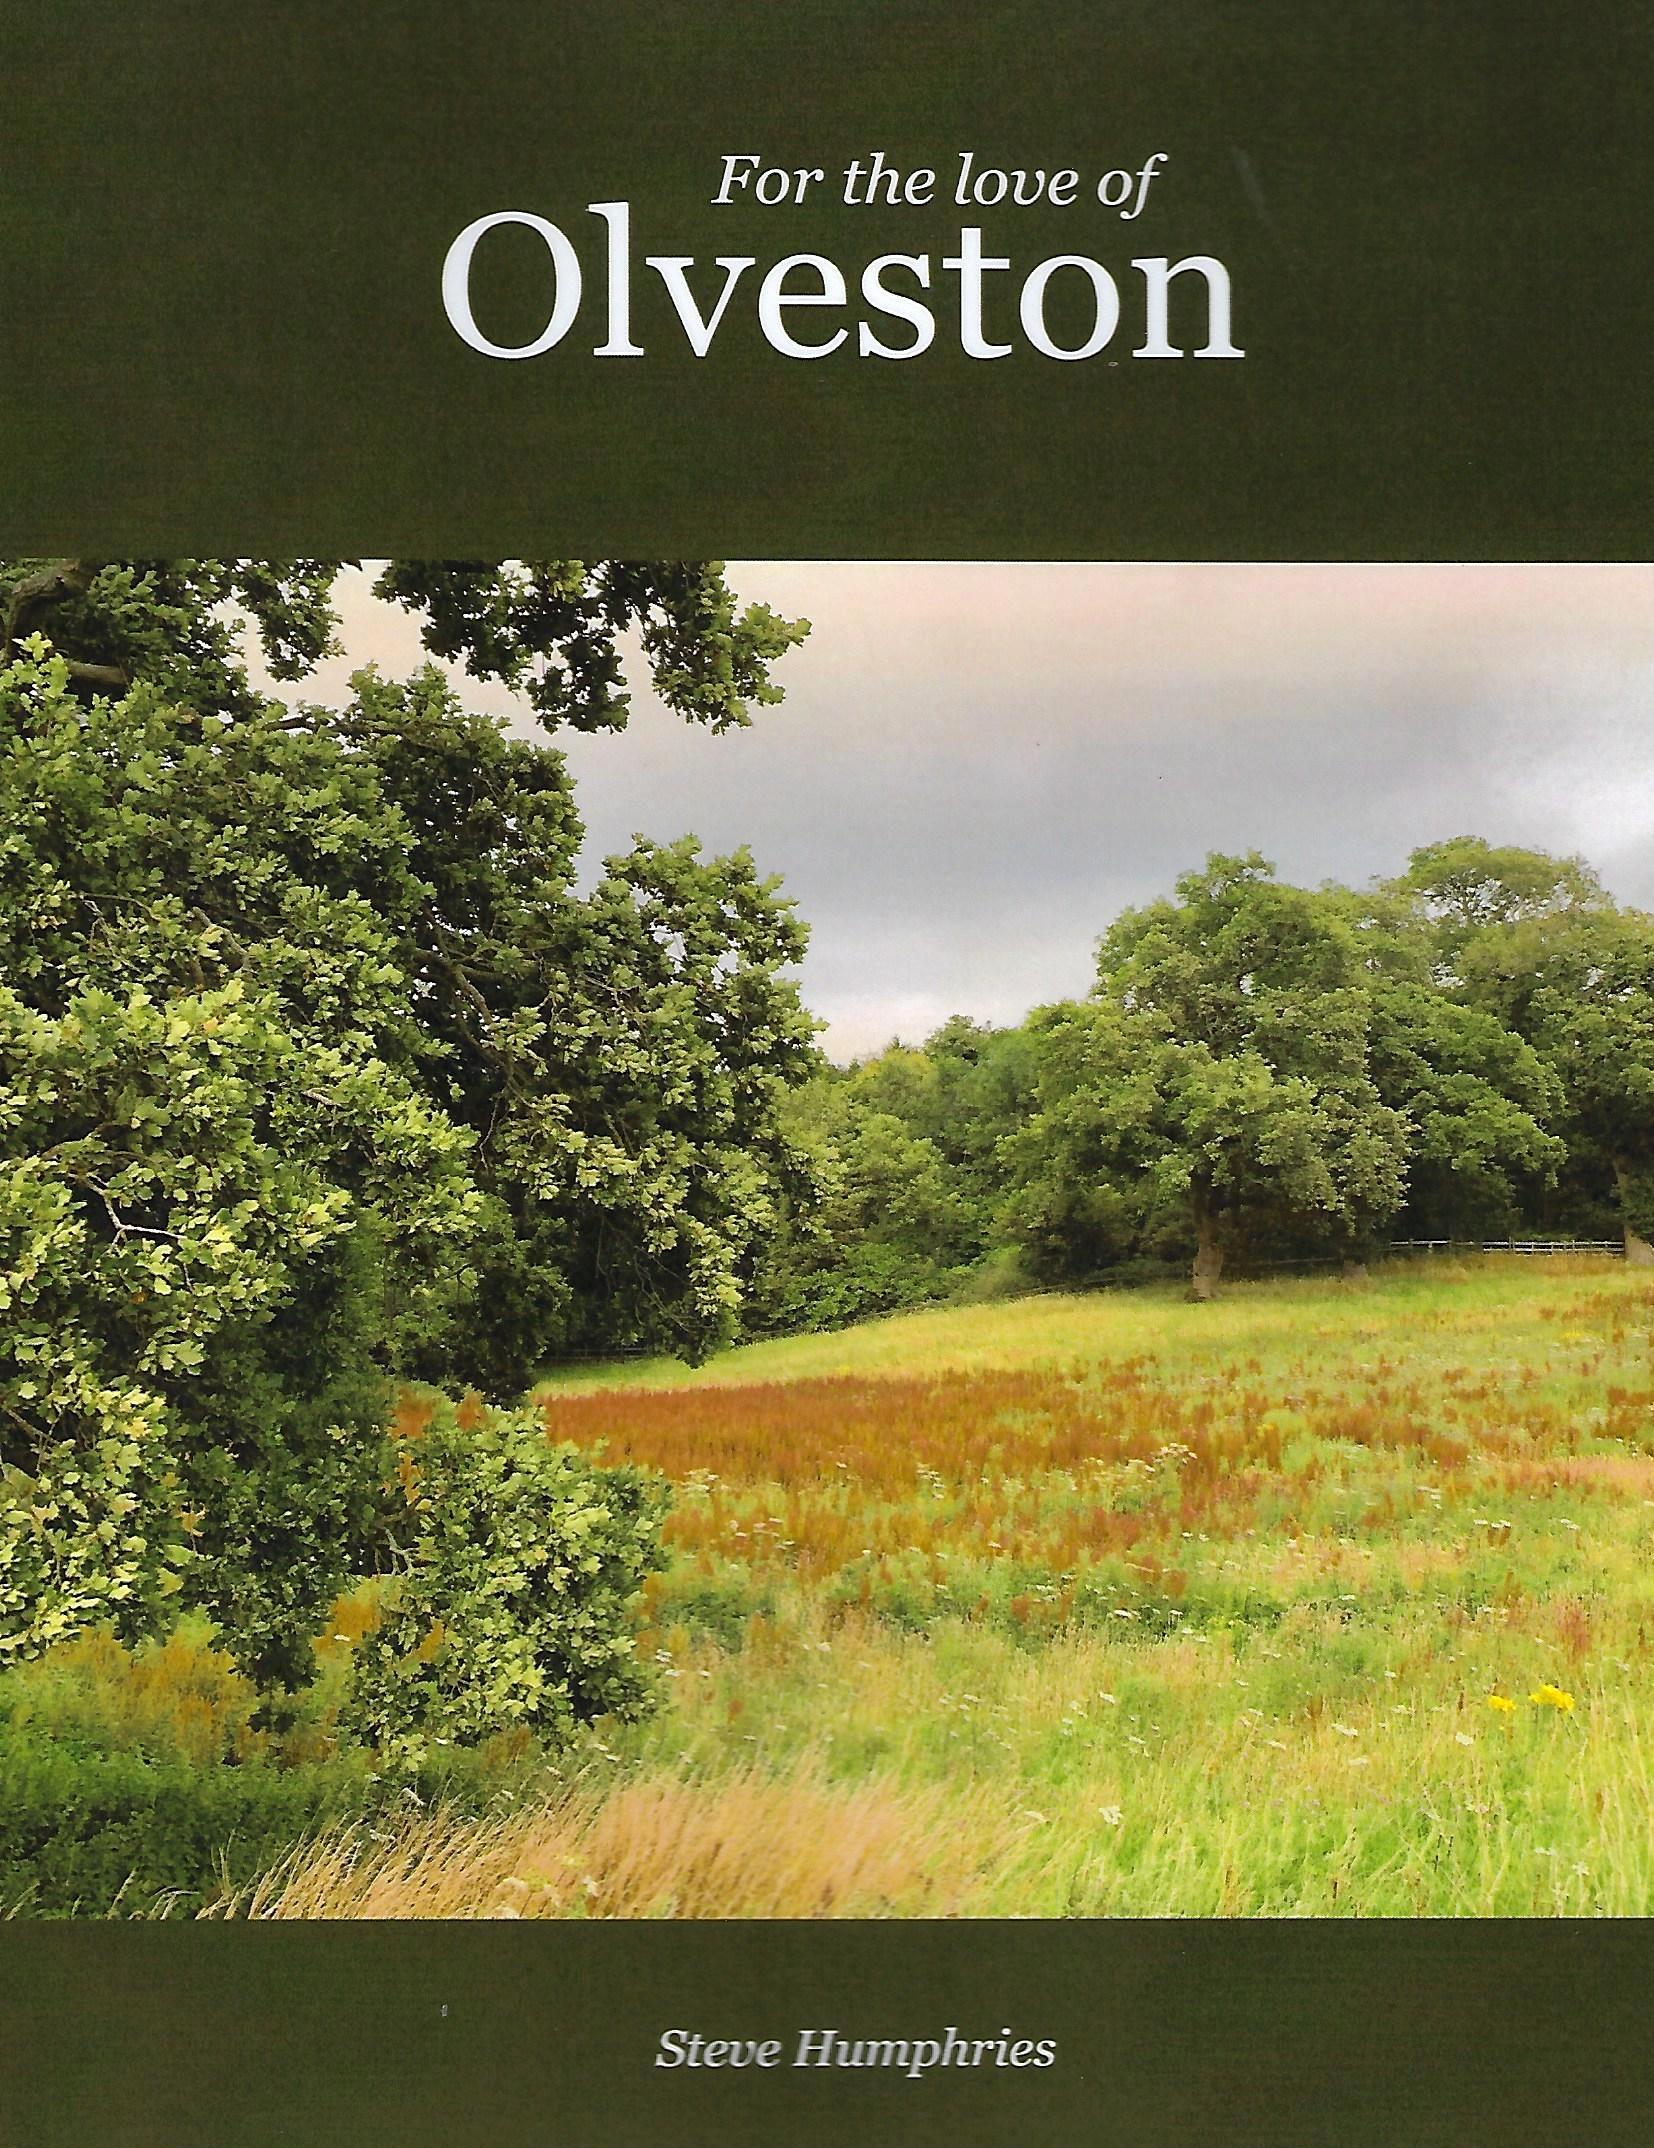 Olveston book cover